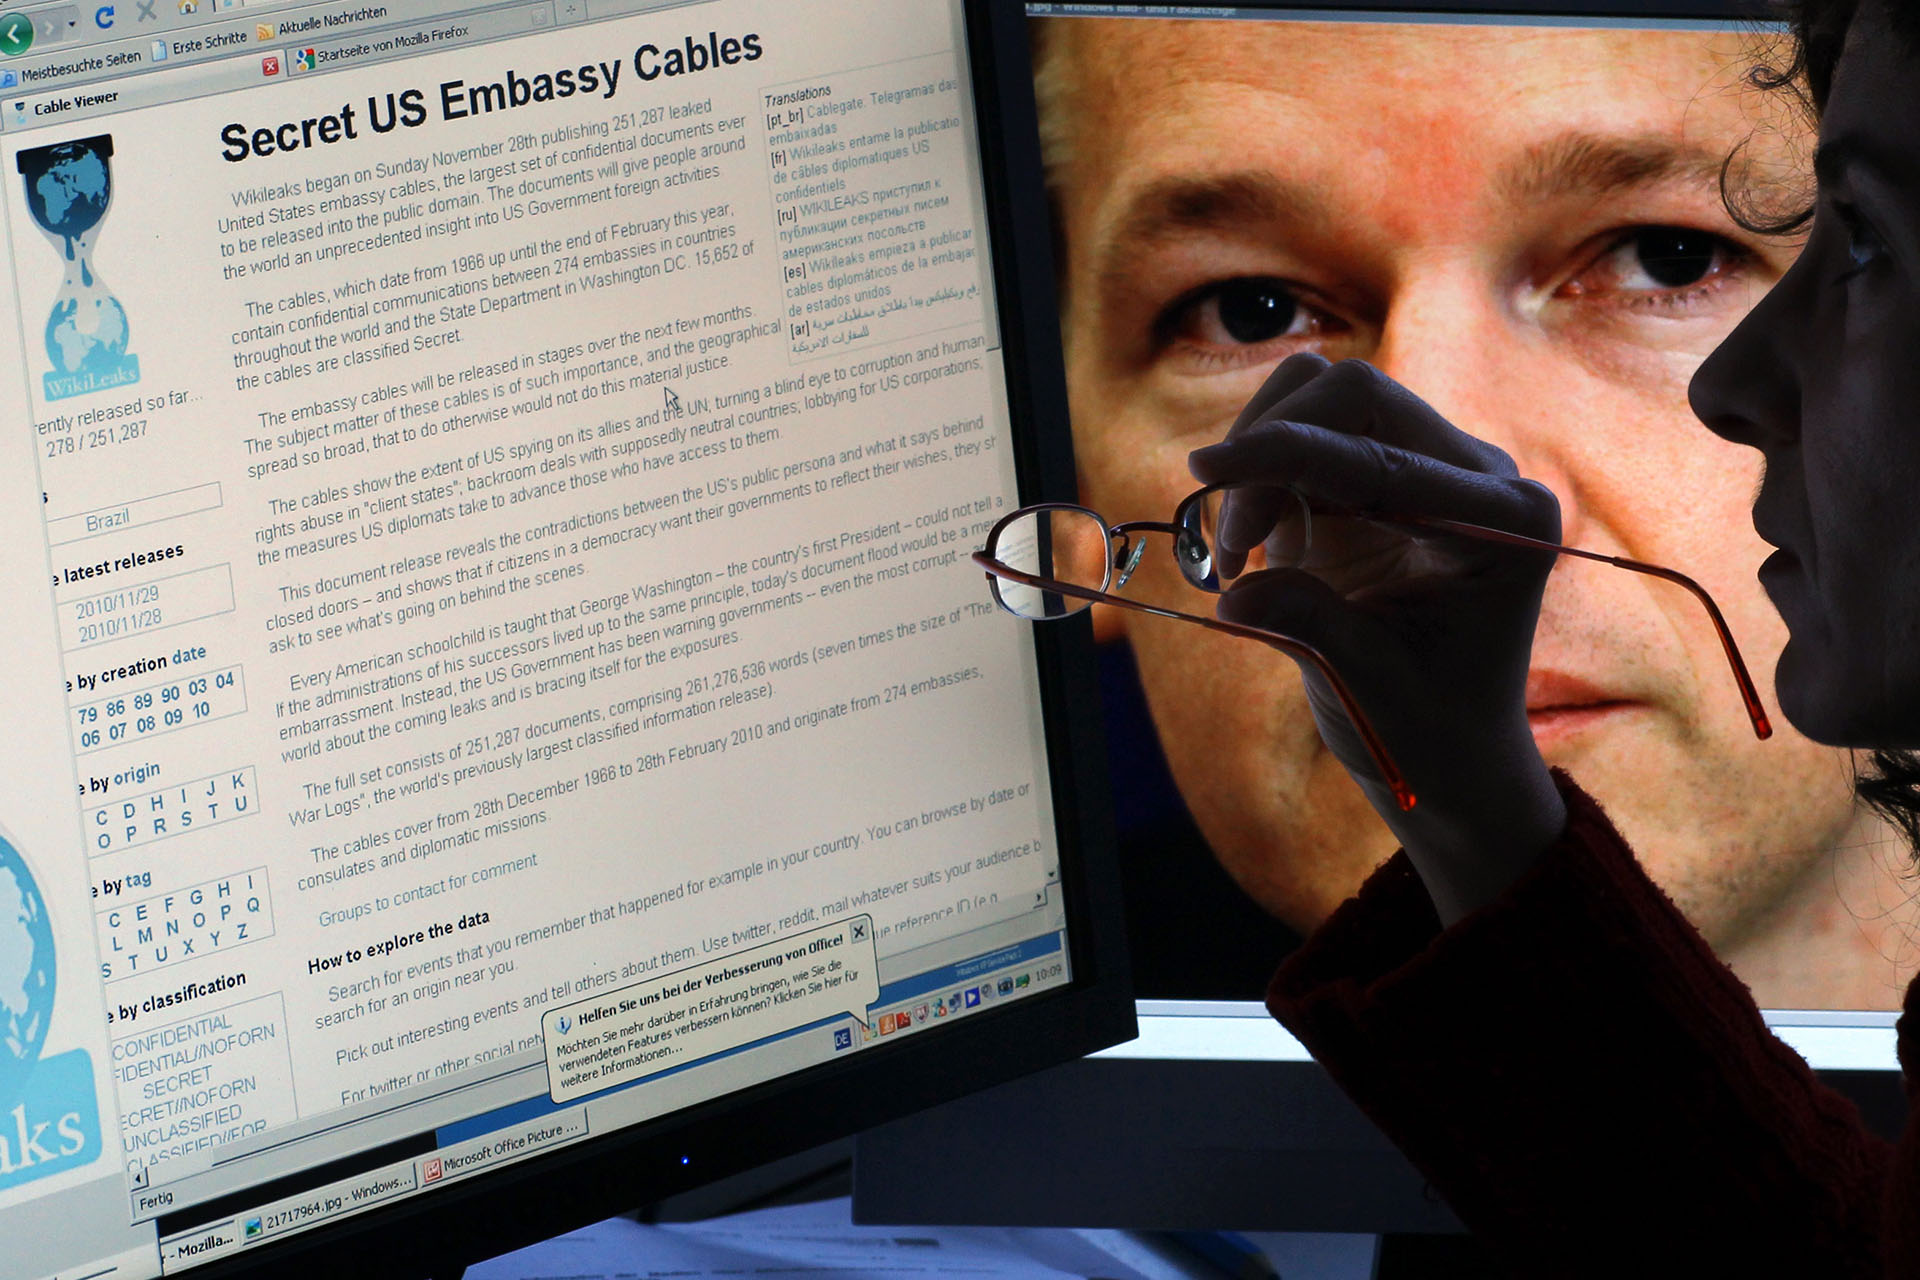 Публикации конфиденциальных переписок американских дипломатов на сайте WikiLeaks, 30 ноября 2011 года